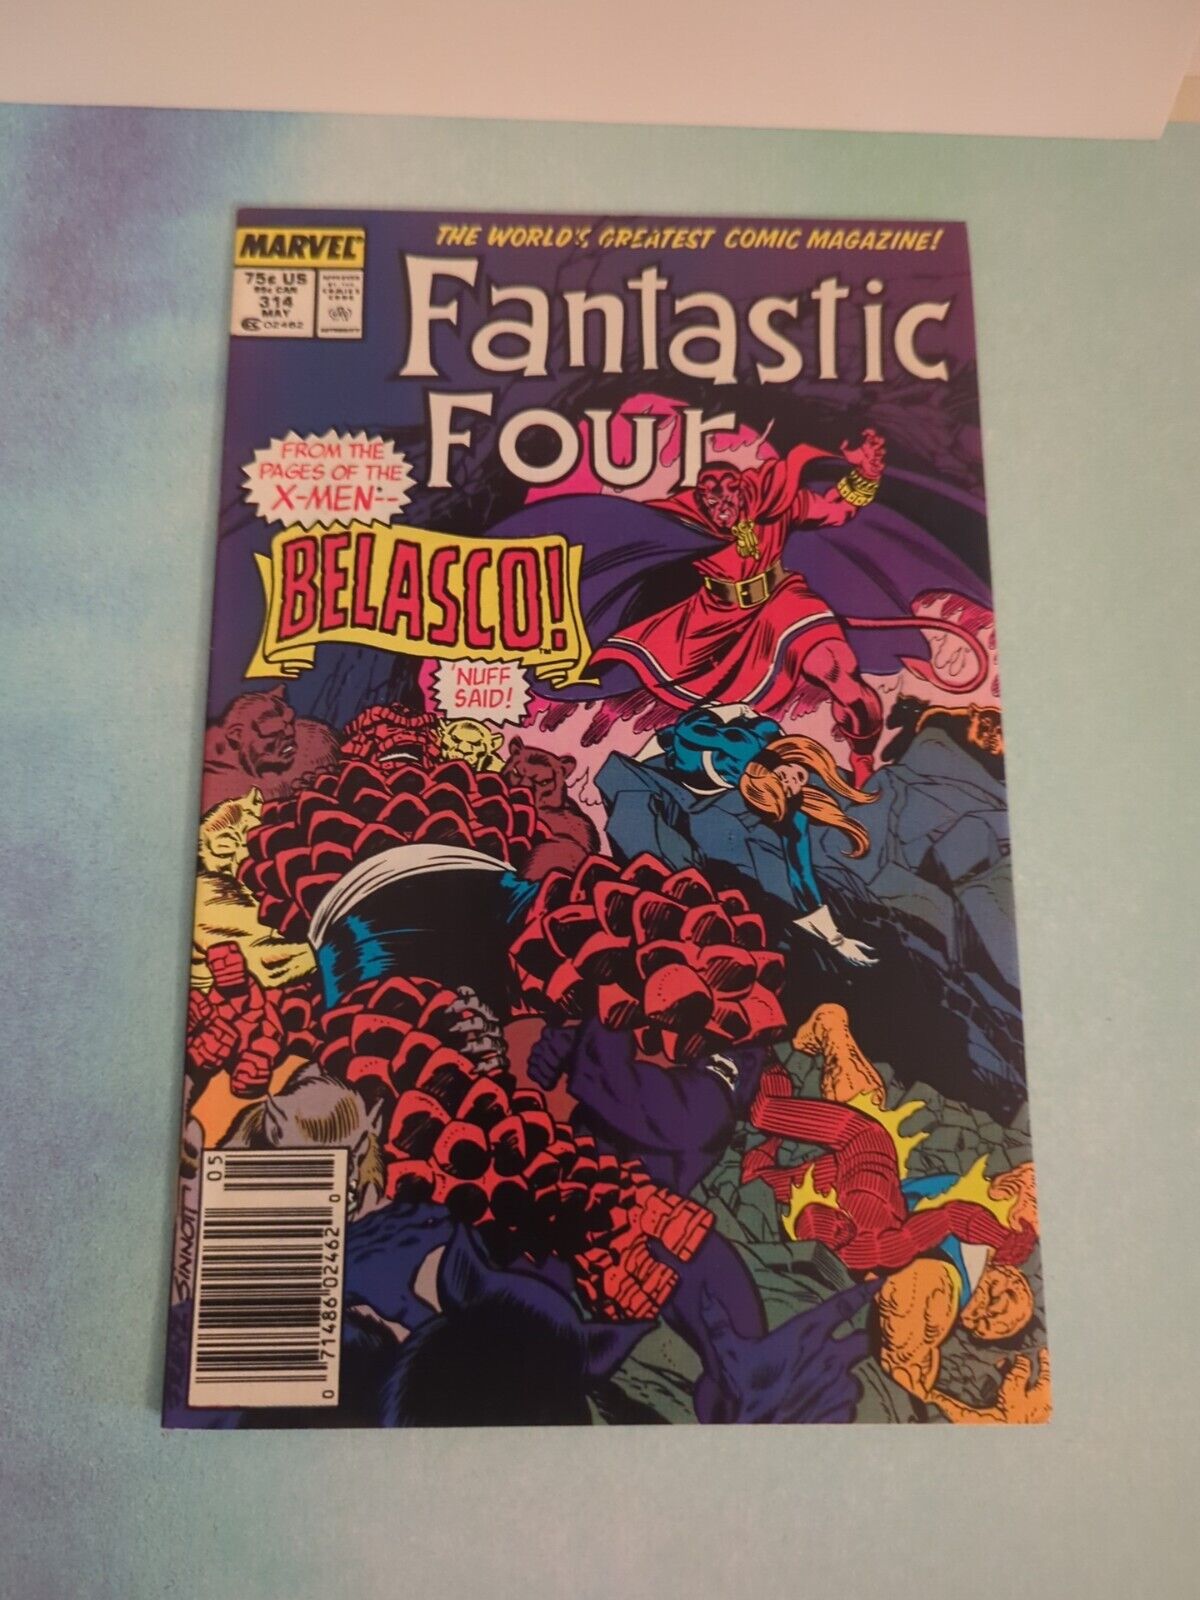 Fantastic Four #314 (Marvel Comics May 1988)